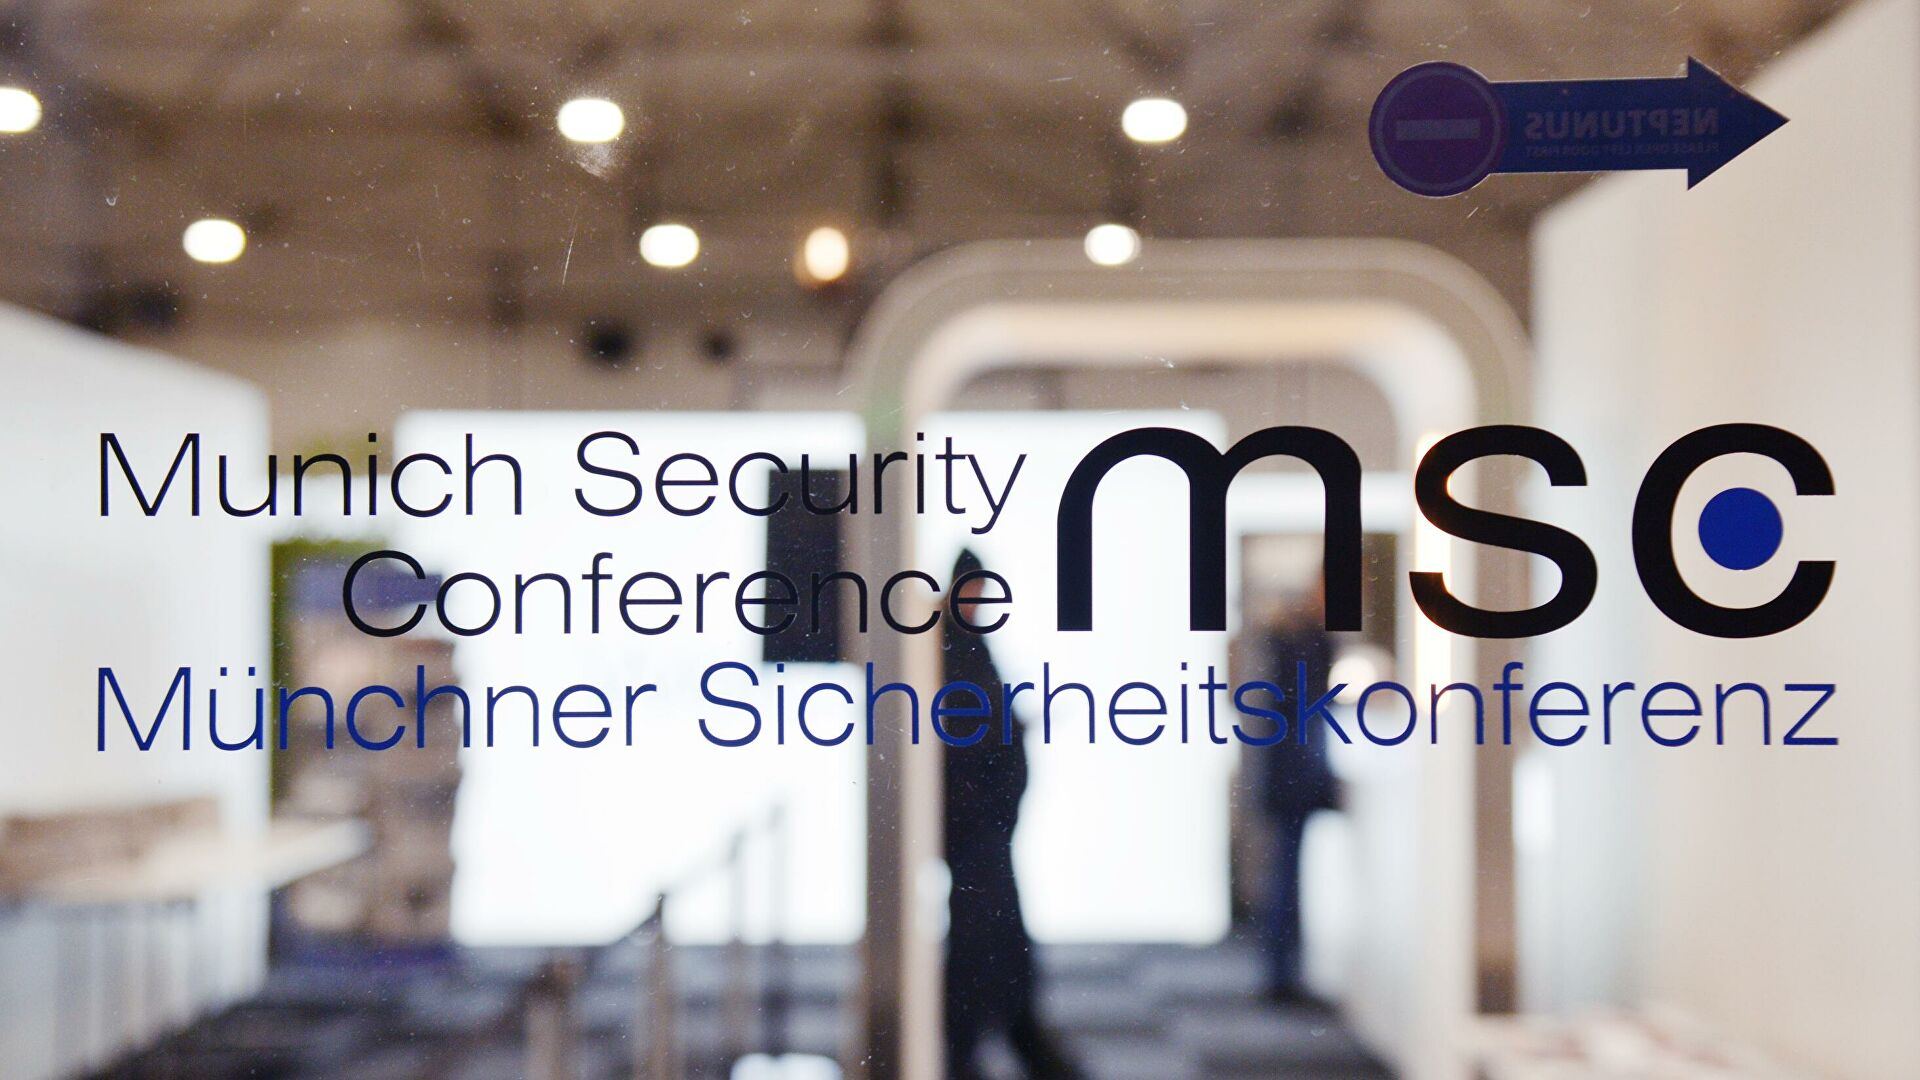 Мюнхенская конференция по безопасности - 2021 не состоится в очном формате